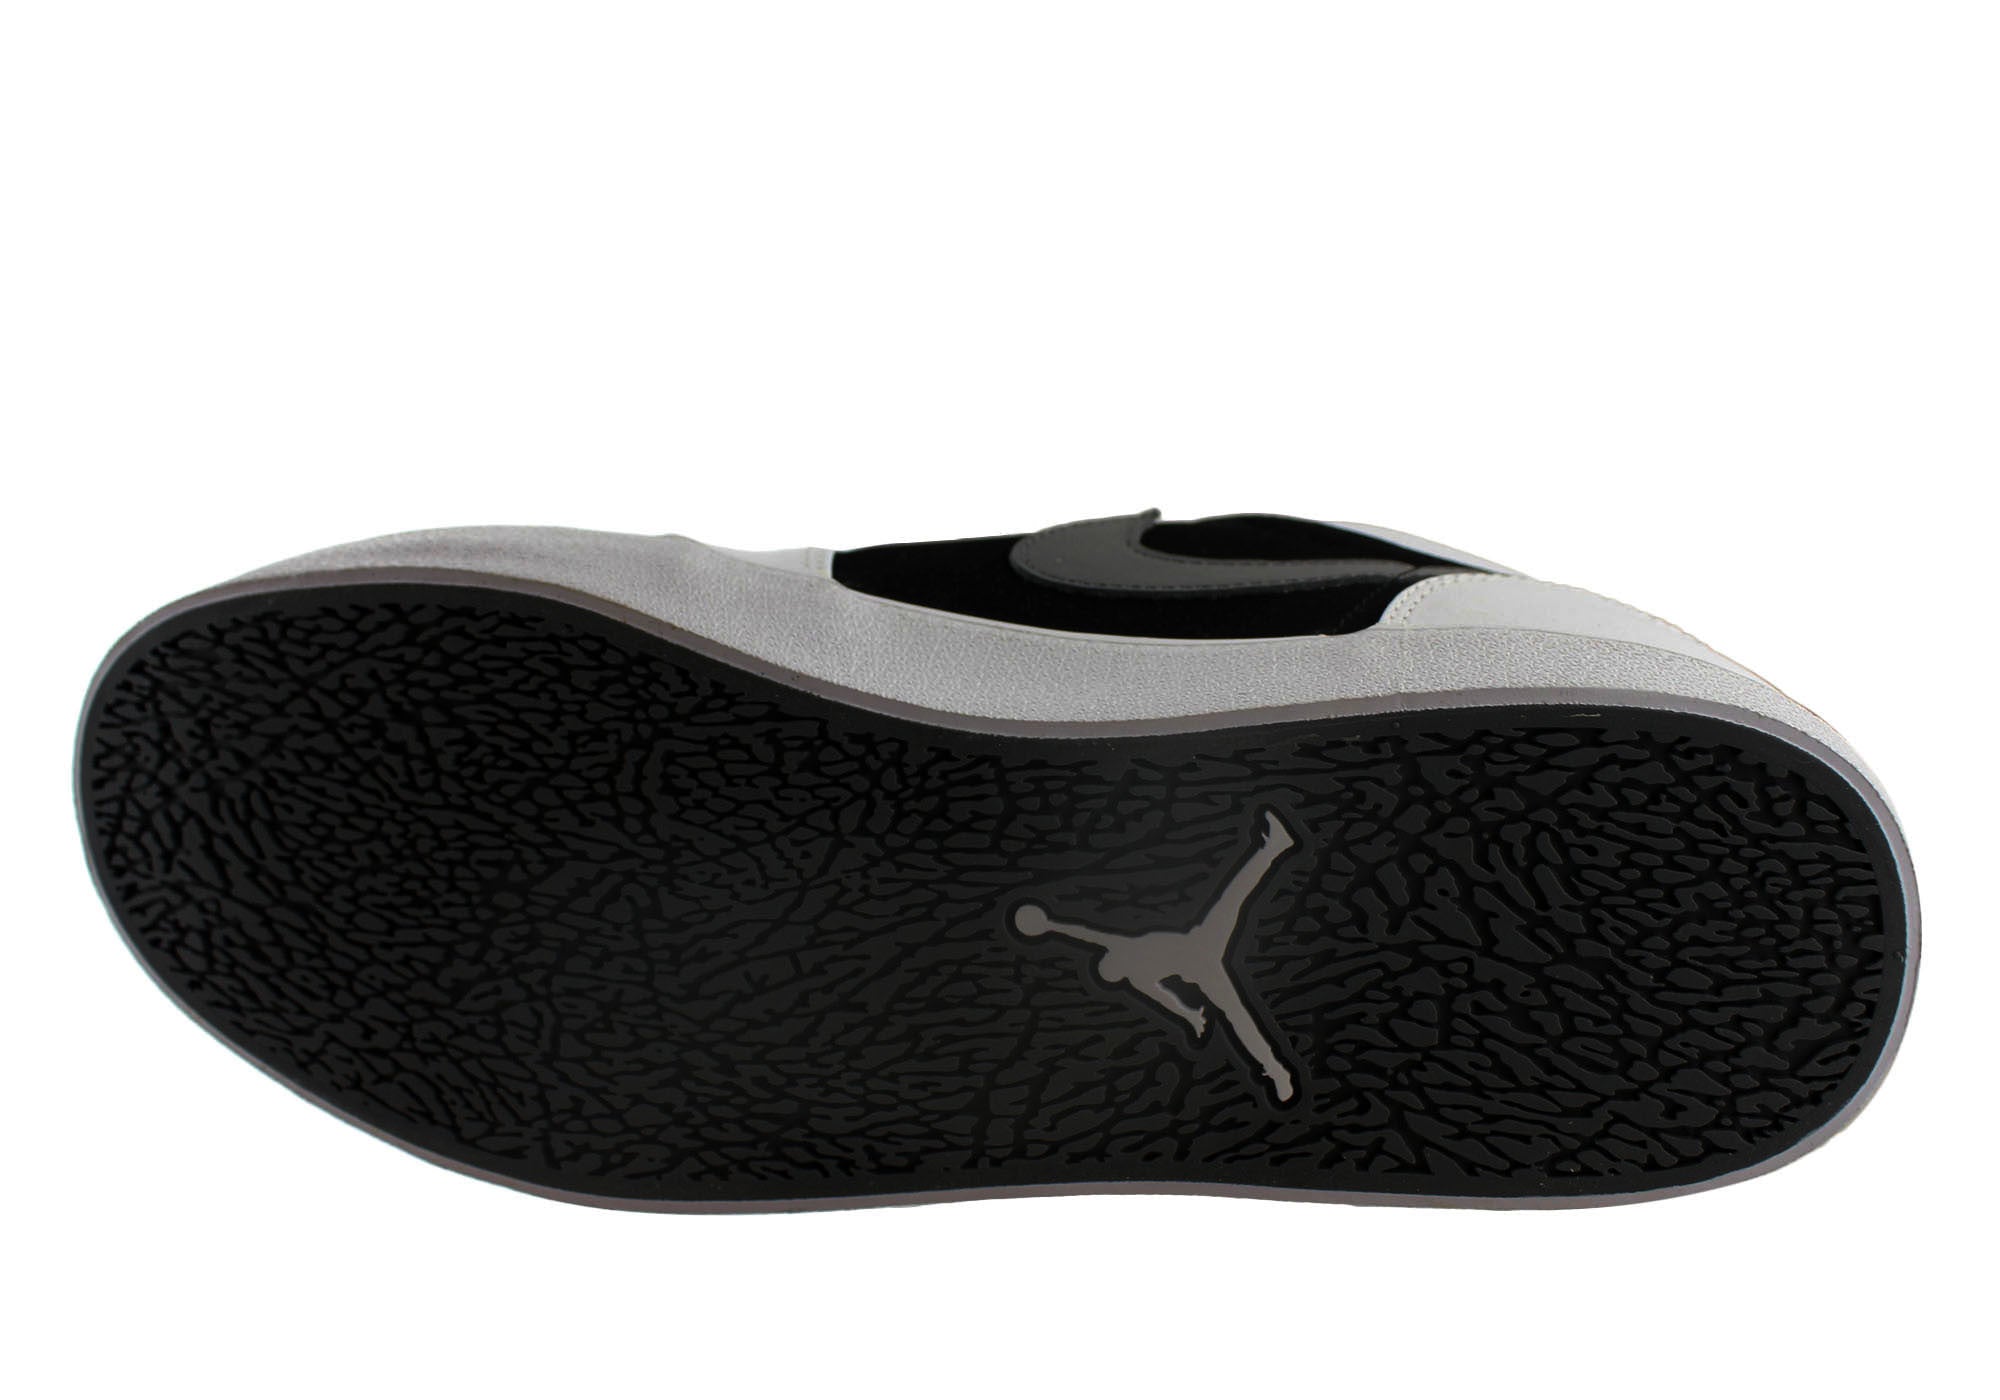 Nike Jordan AJ V.2 Low Mens Casual Lace Up Sneakers